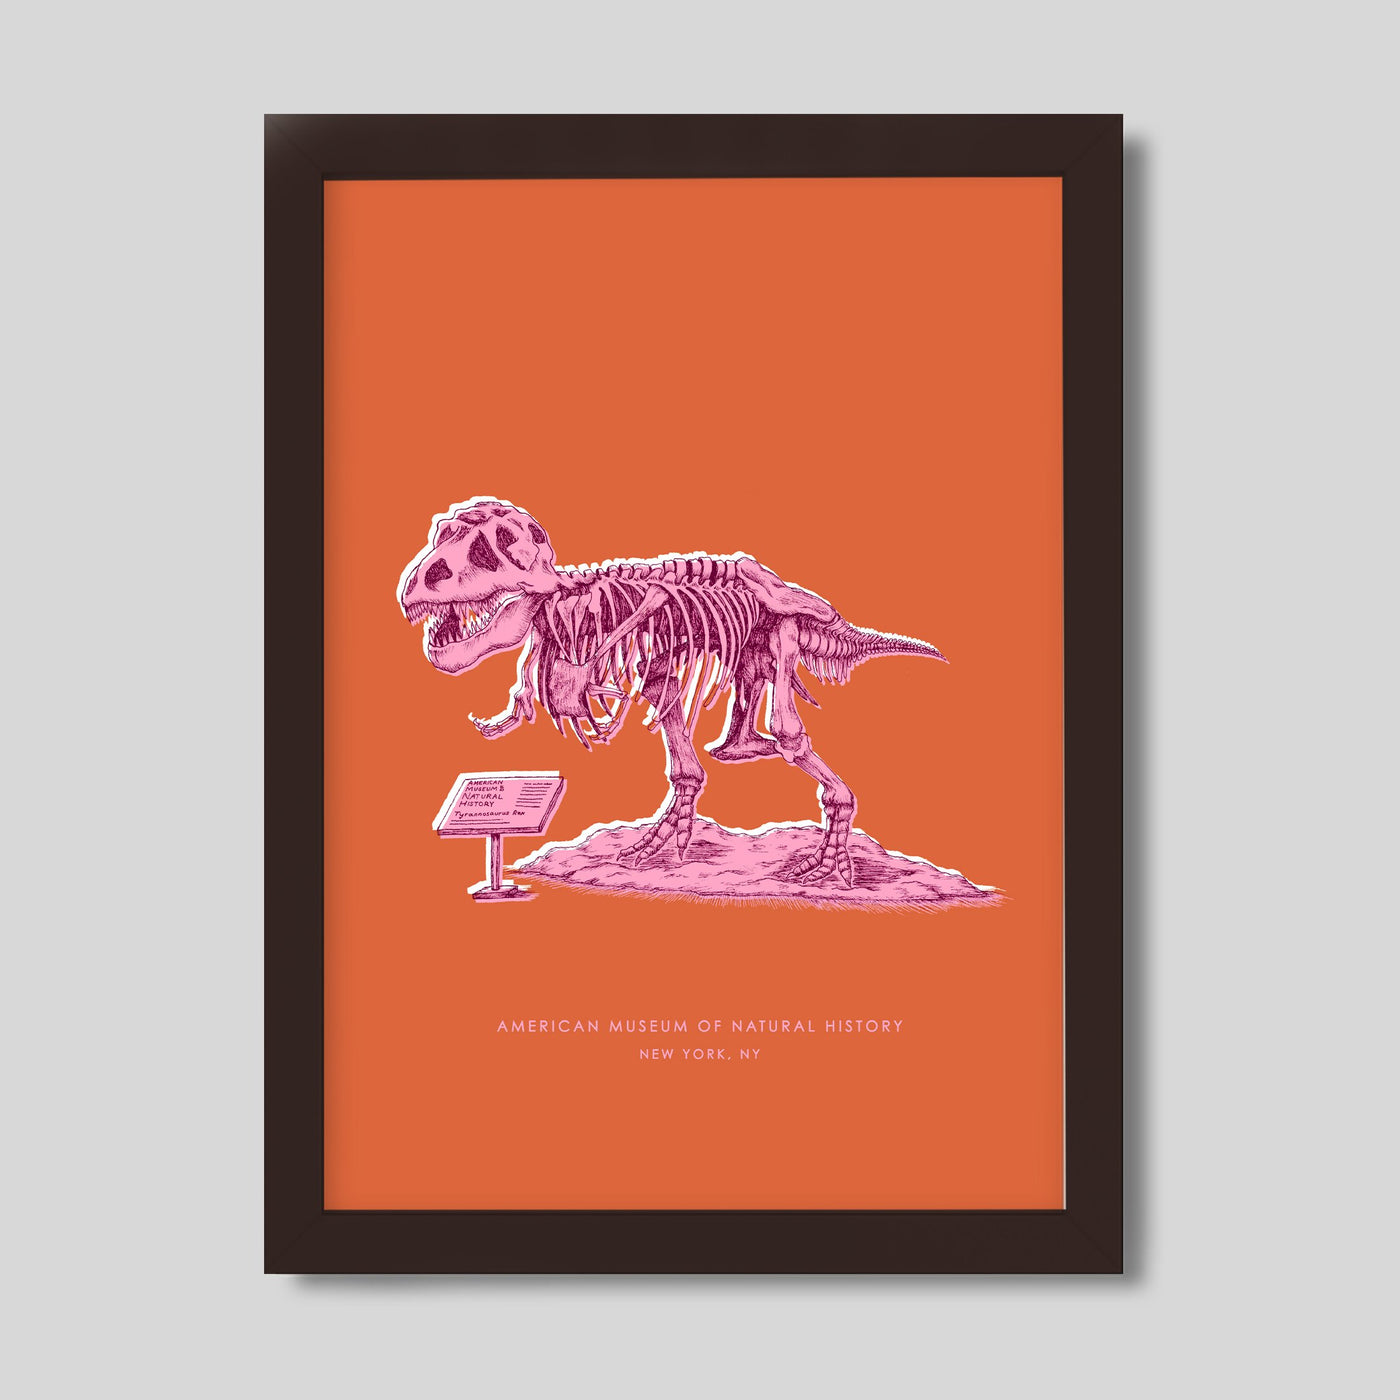 Gallery Prints Orange Print / 8x10 / Walnut Frame New York Dinosaur Print dombezalergii